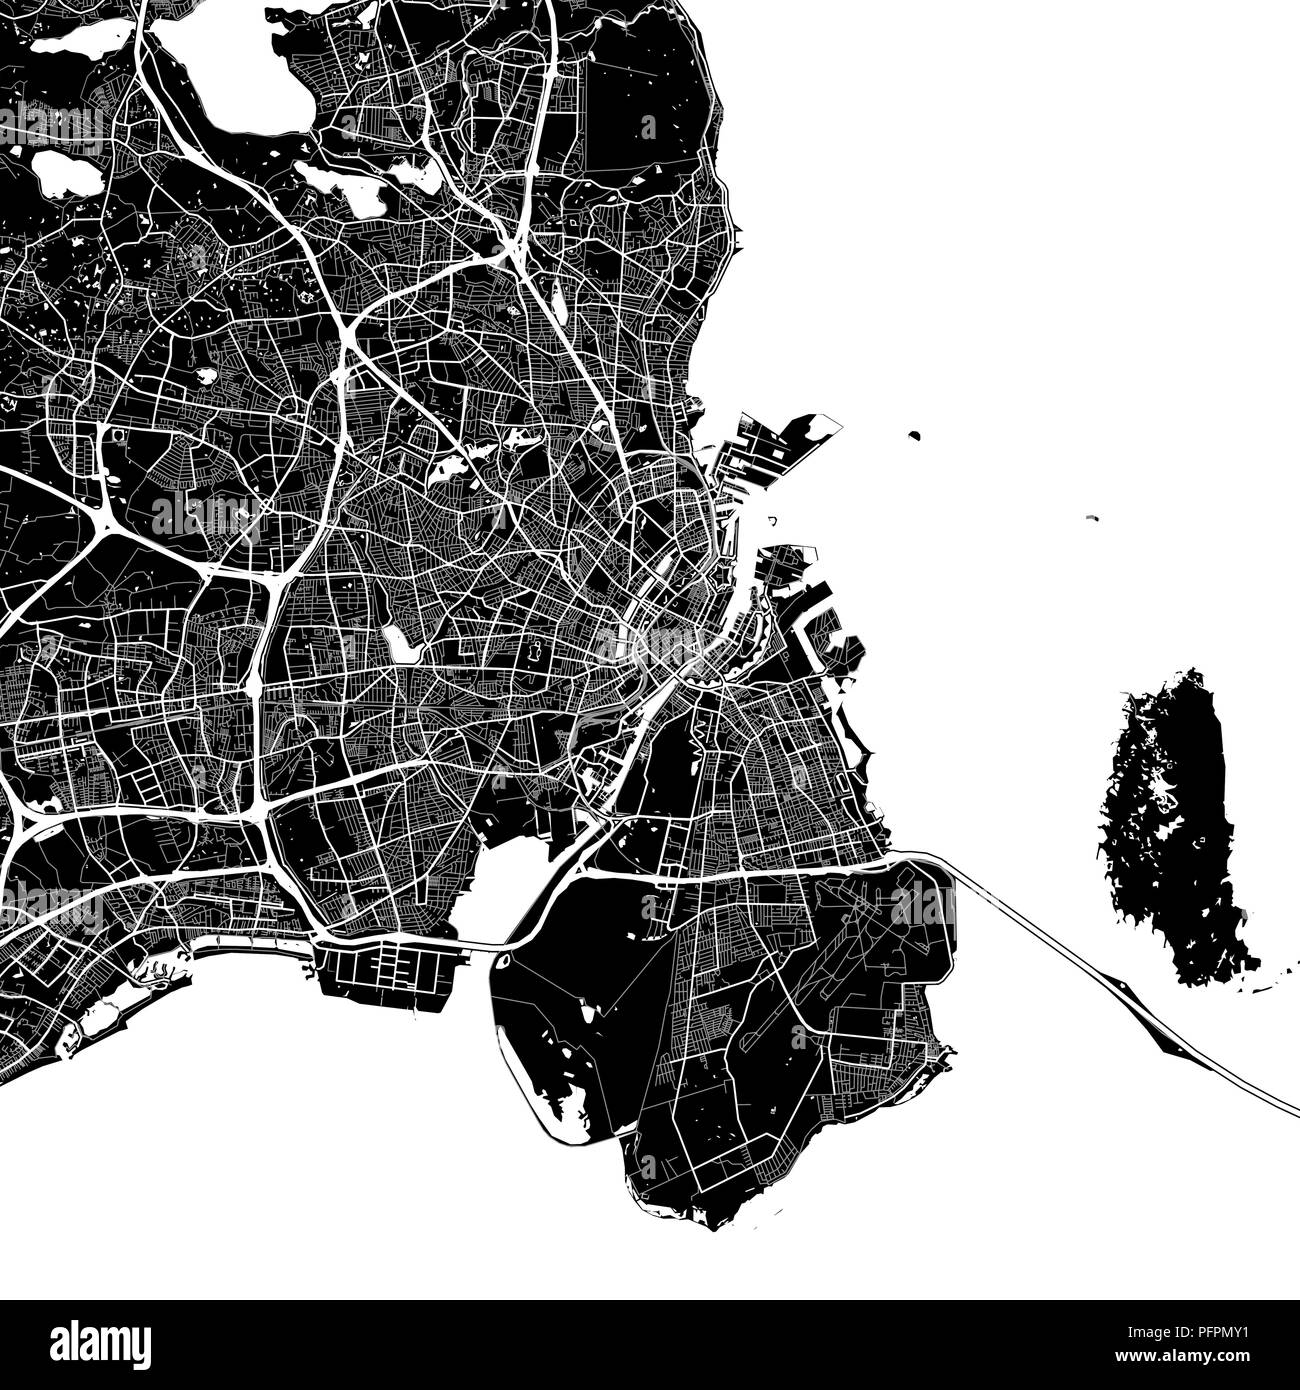 Stadtplan von Kopenhagen, Dänemark. Der dunkle Hintergrund Version für Infografik und Marketing Projekte. Diese Karte von Kopenhagen, enthält typische Sehenswürdigkeiten wi Stock Vektor